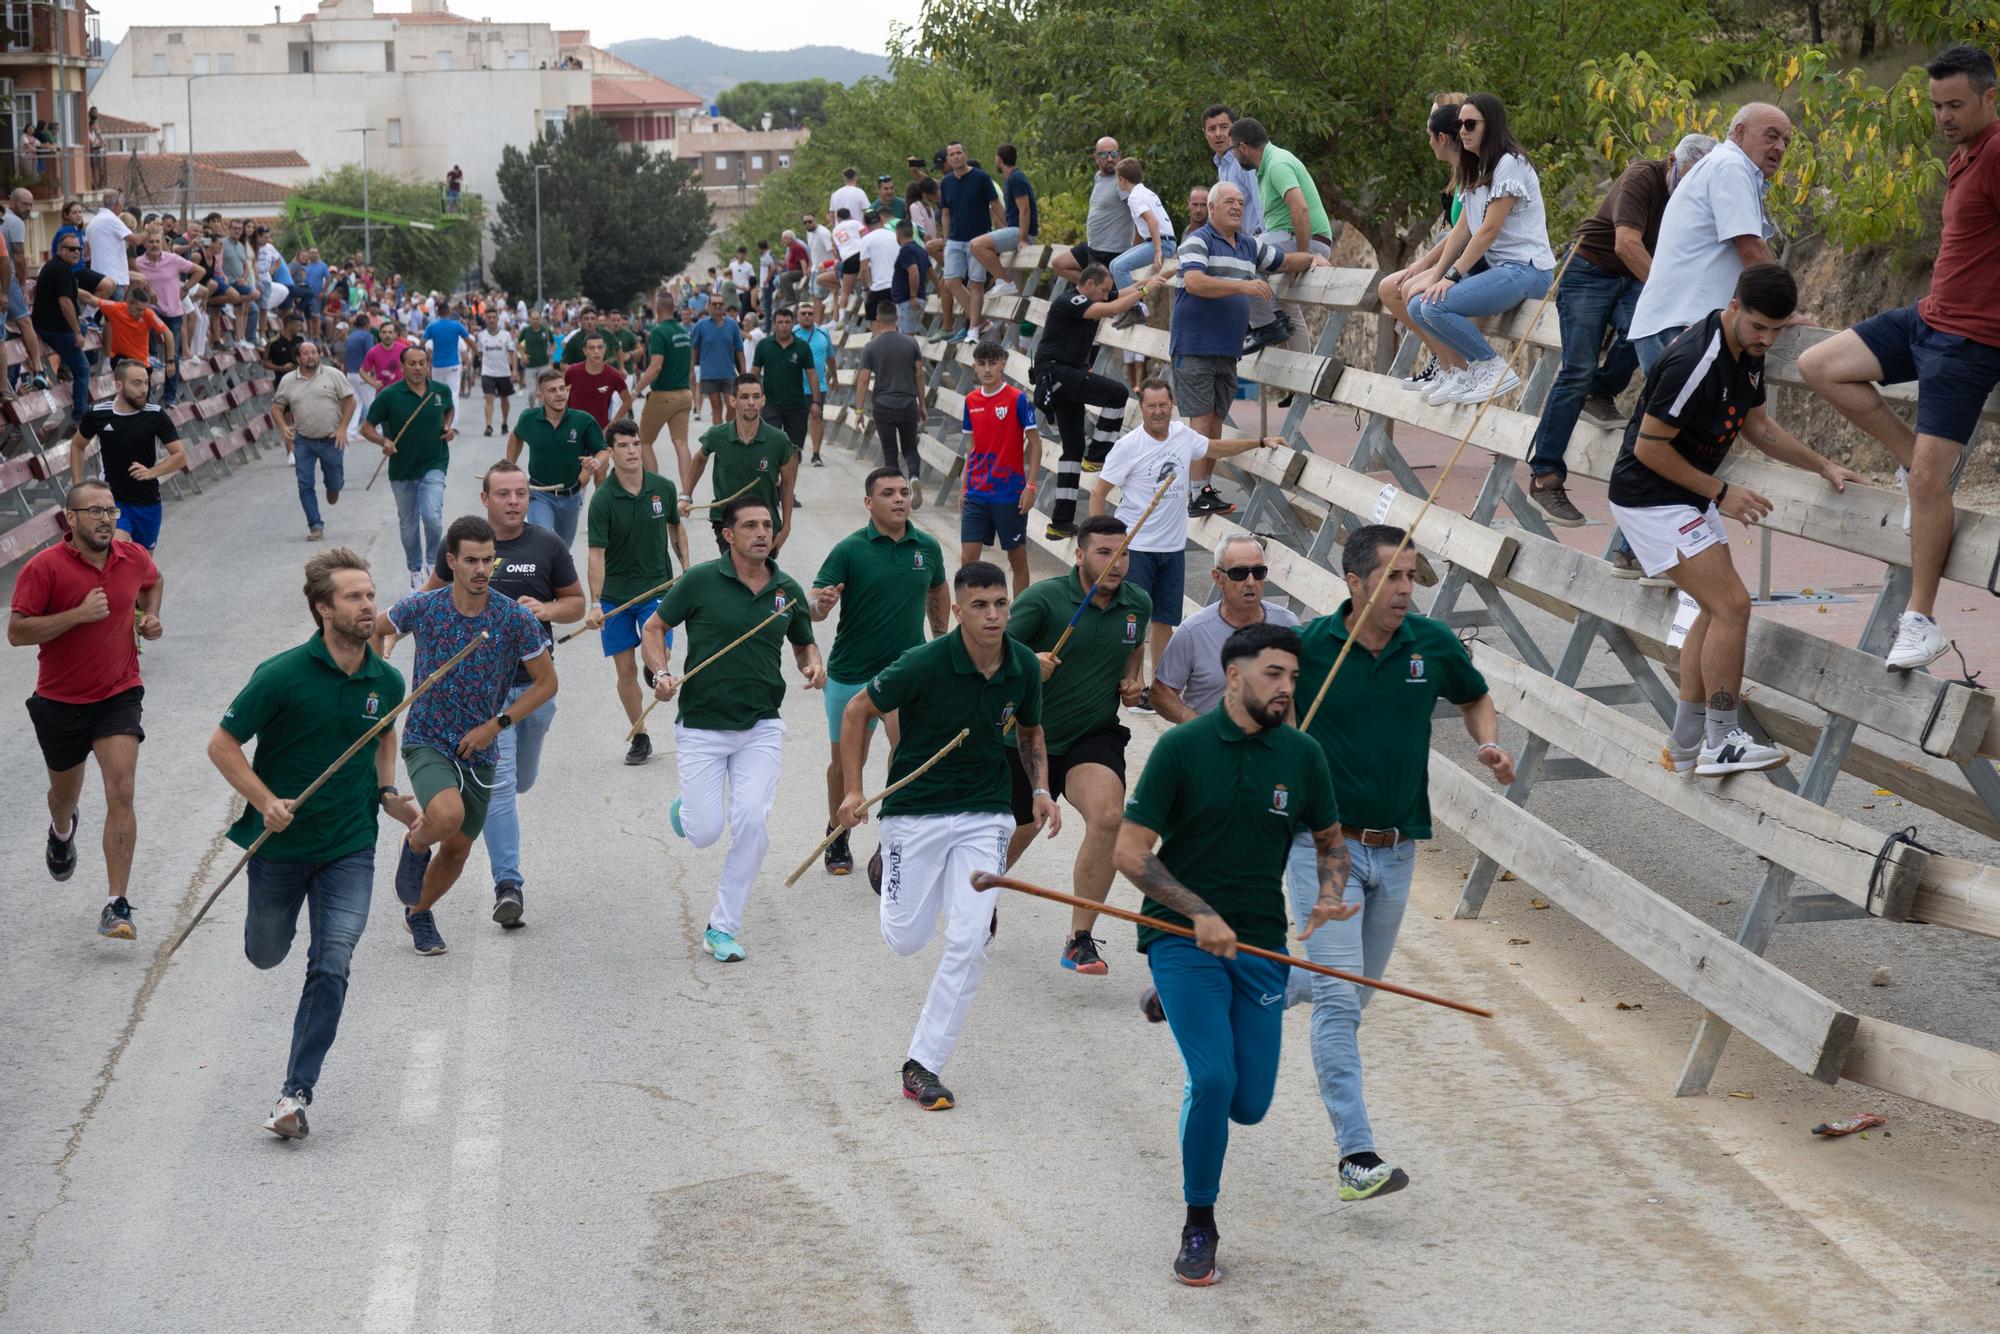 Tercer encierro de la Feria Taurina del Arroz en Calasparra